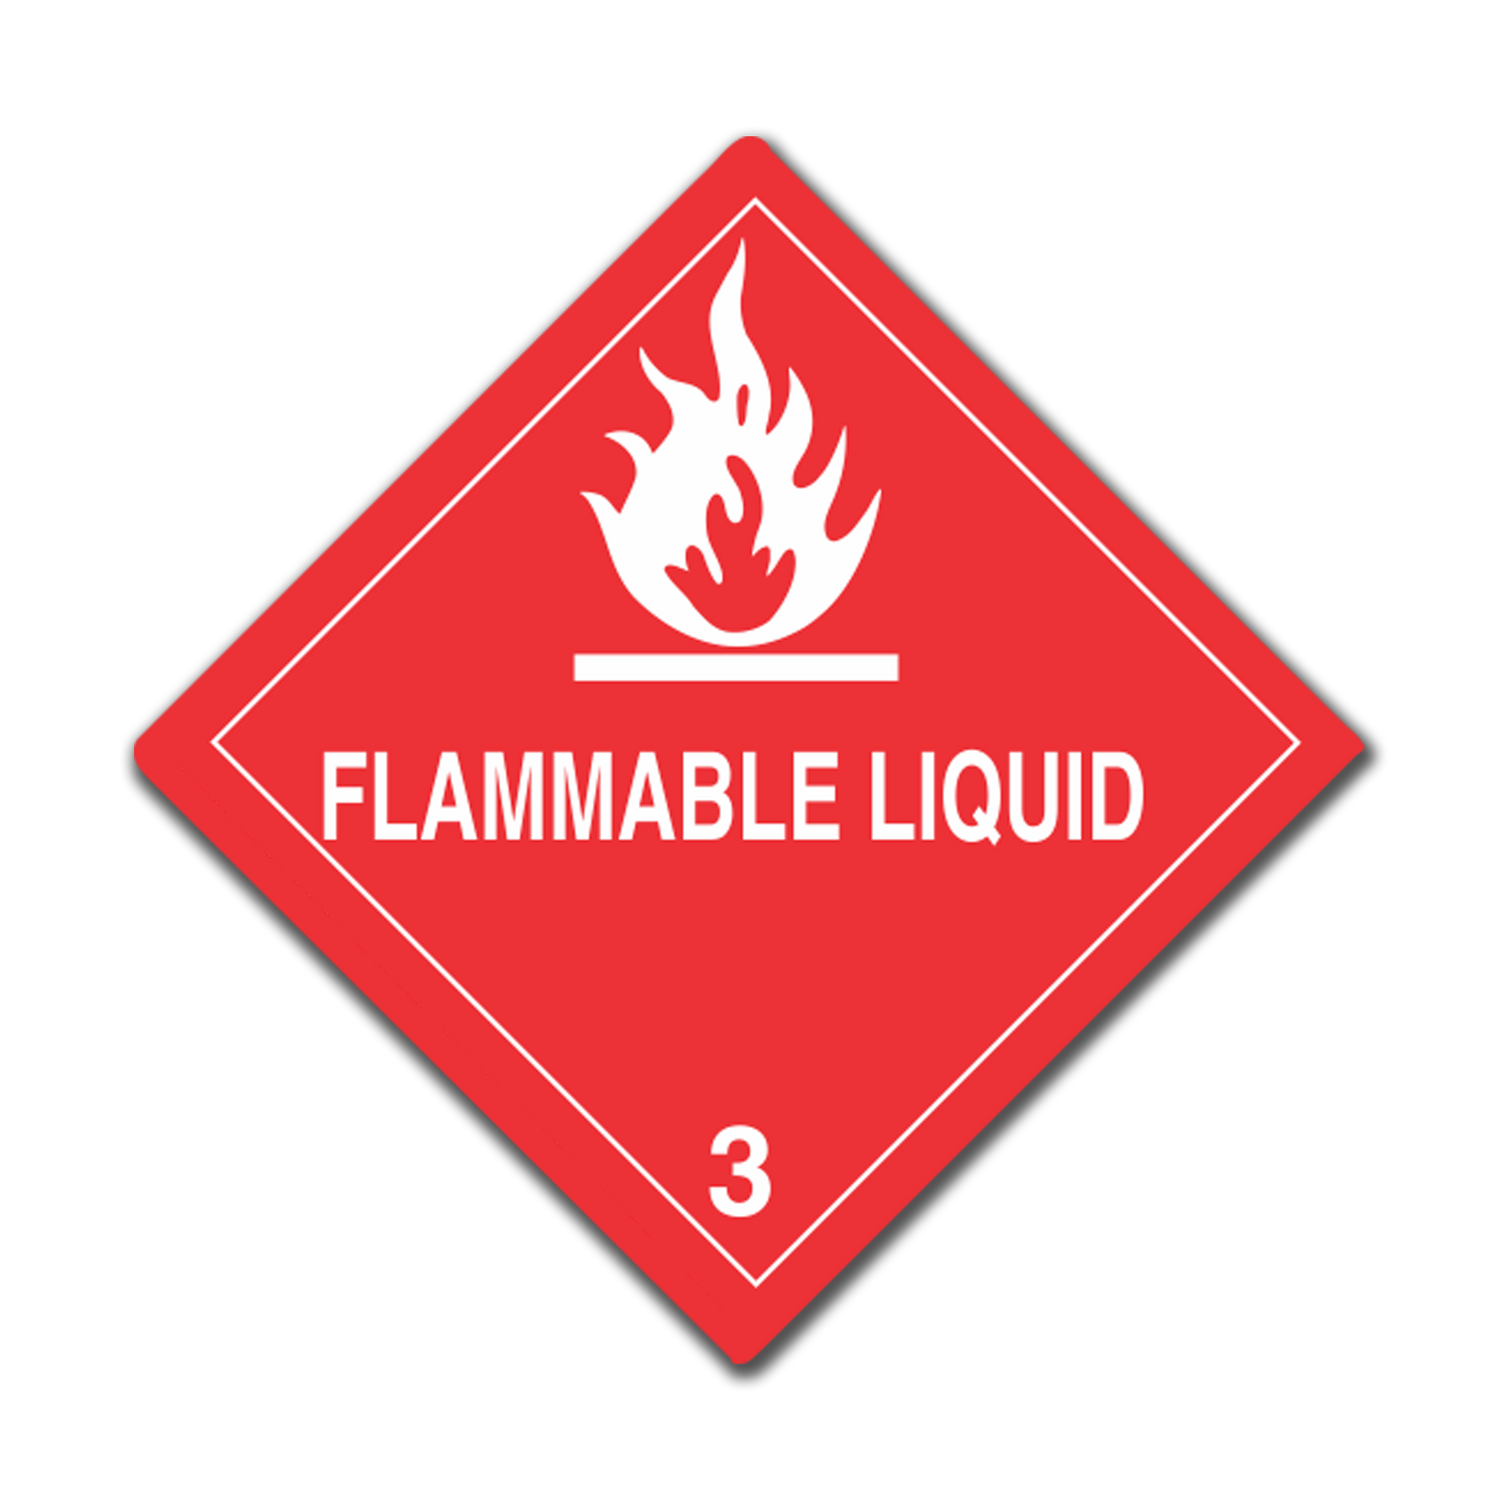 Class 3 - Flammable liquid, UN Dangerous Goods